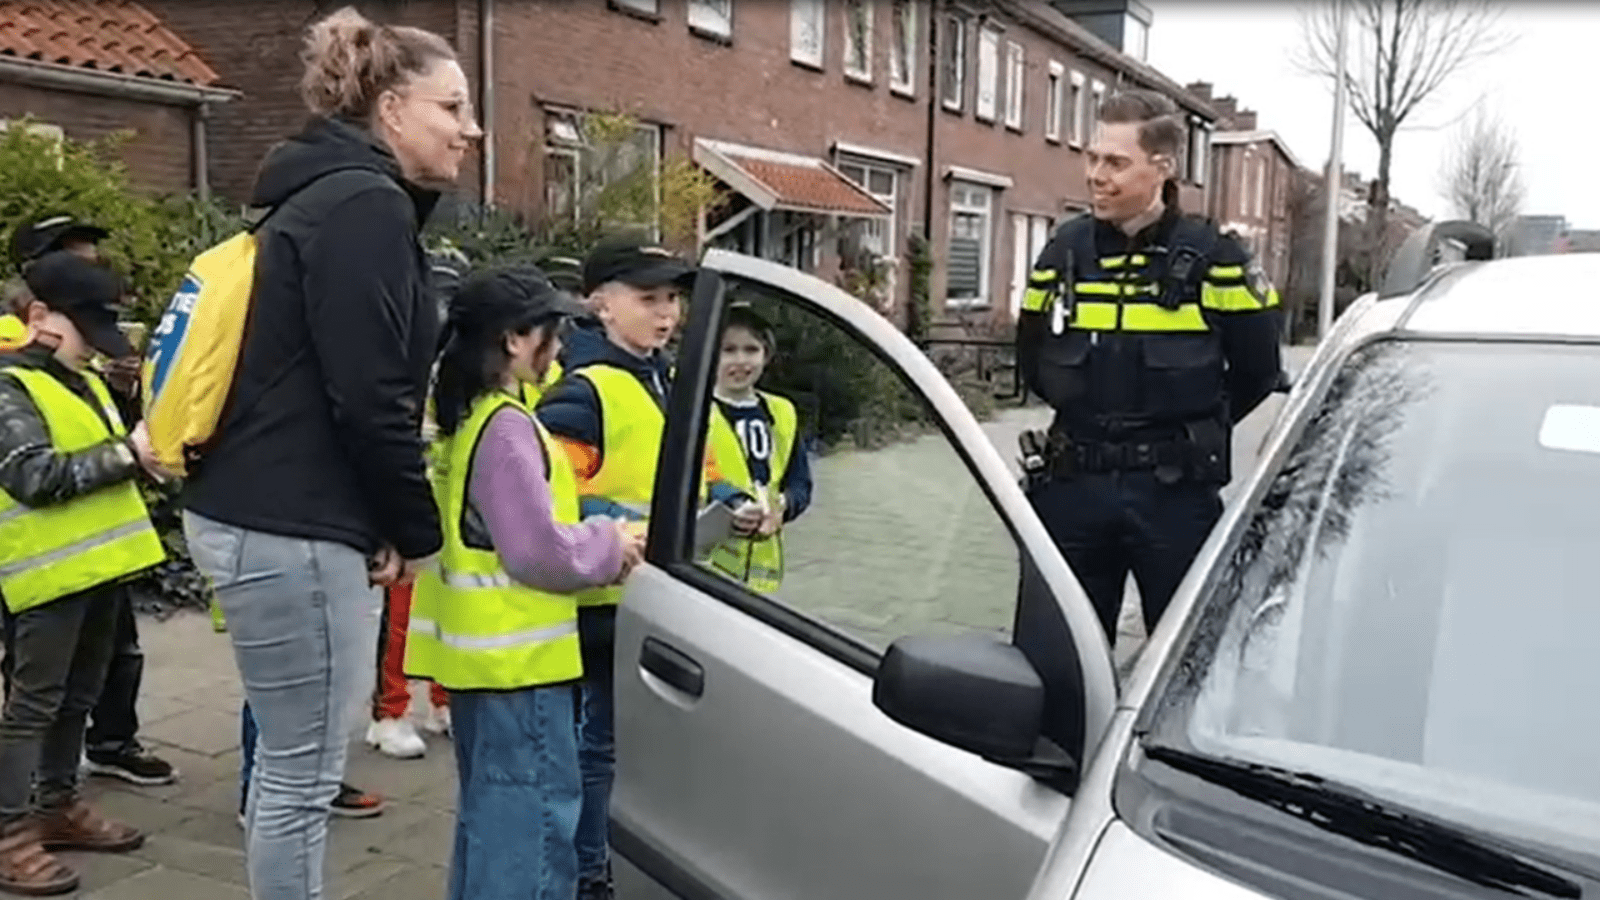 kinderen doen snelheidscontrole in wijk met politie en SVEN